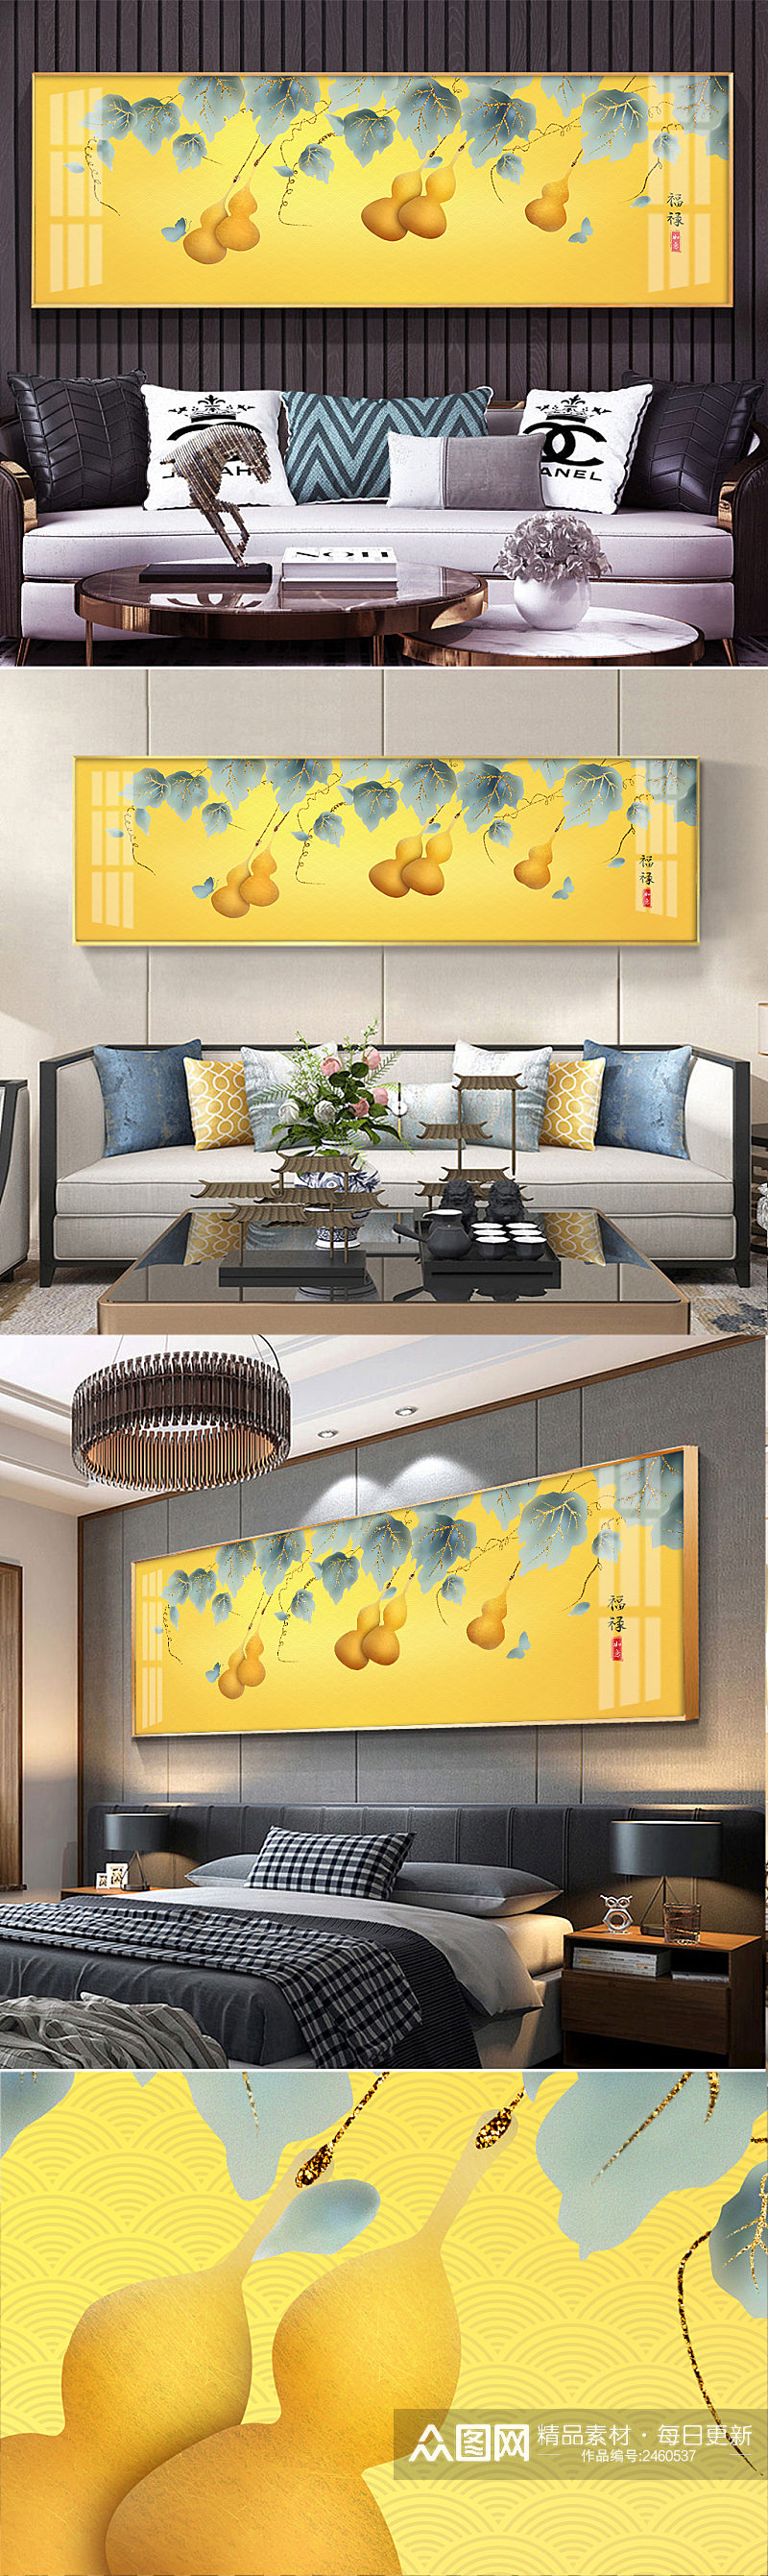 金葫芦五福临门装饰画素材